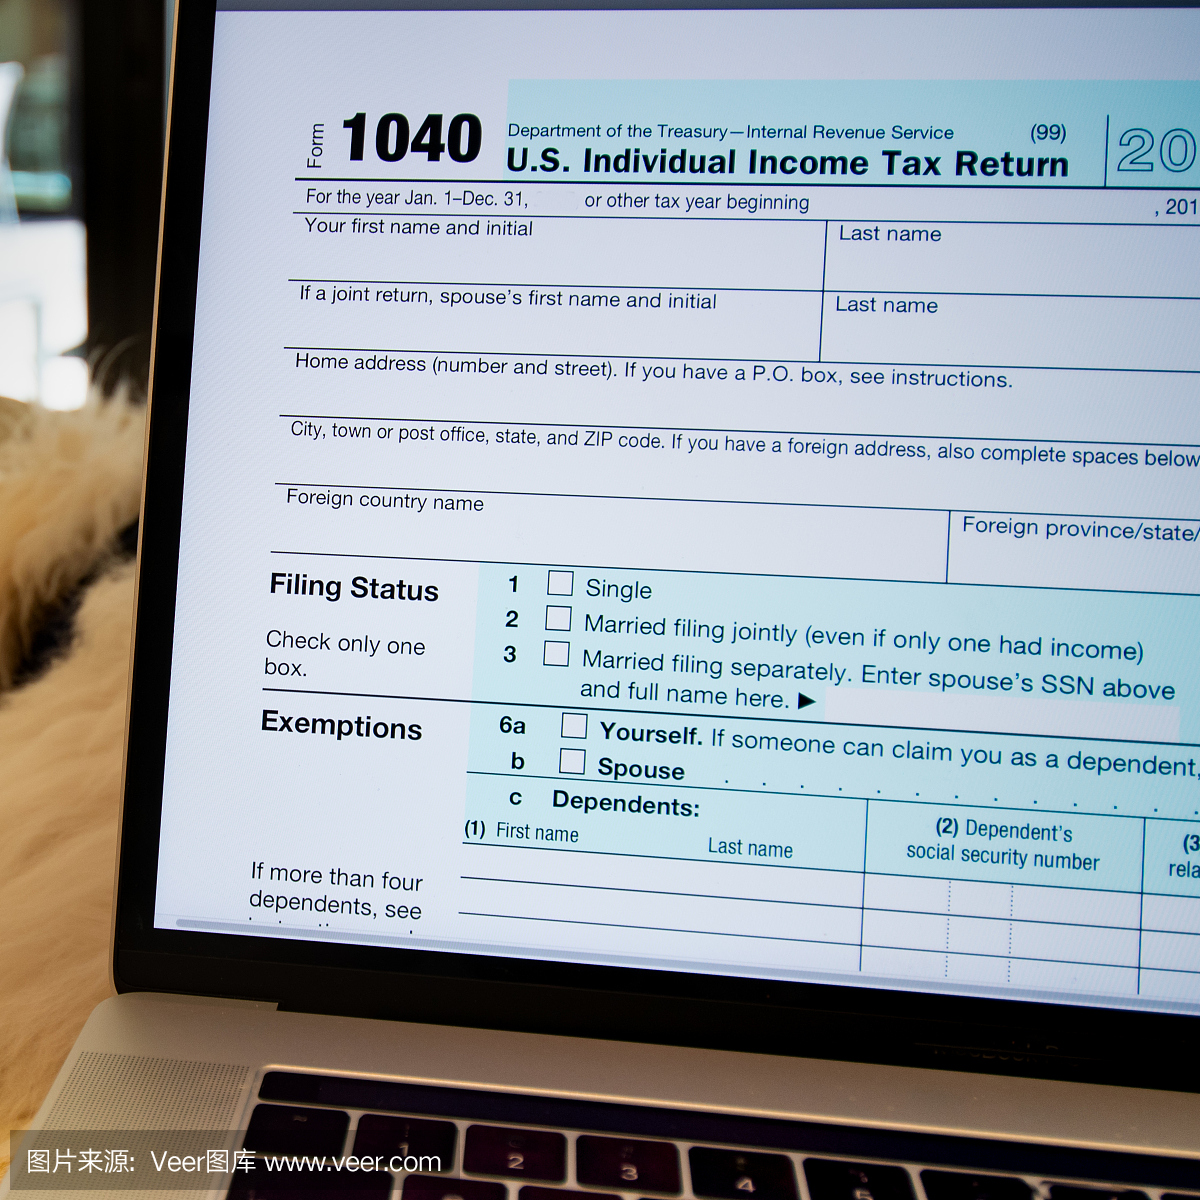 归档笔记本电脑,IRS表格1040,个人所得税申报